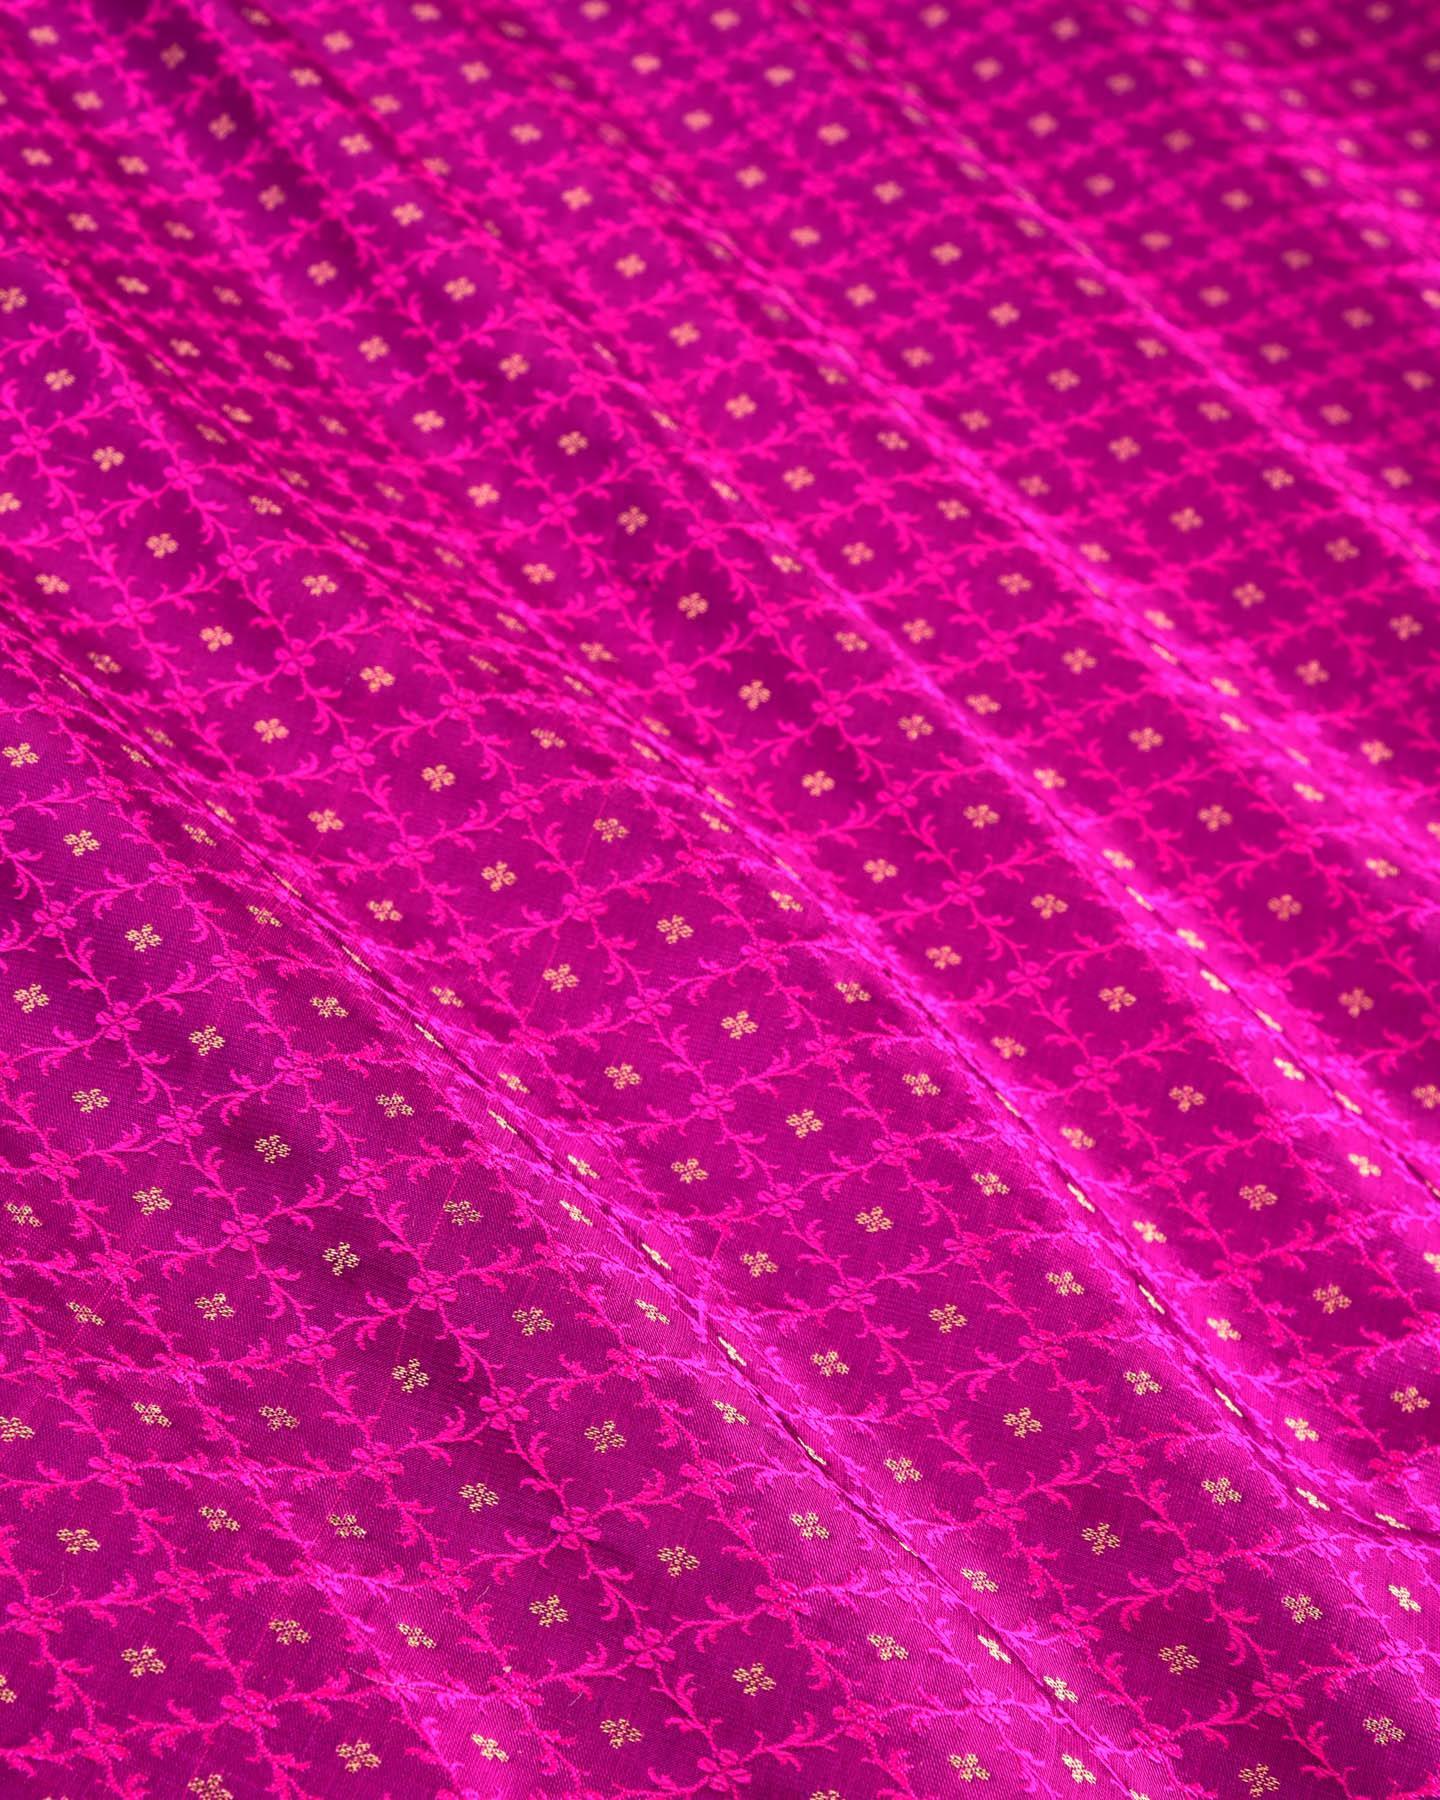 Pink On Purple Banarasi Tanchoi Brocade Handwoven Katan Silk Fabric - By HolyWeaves, Benares